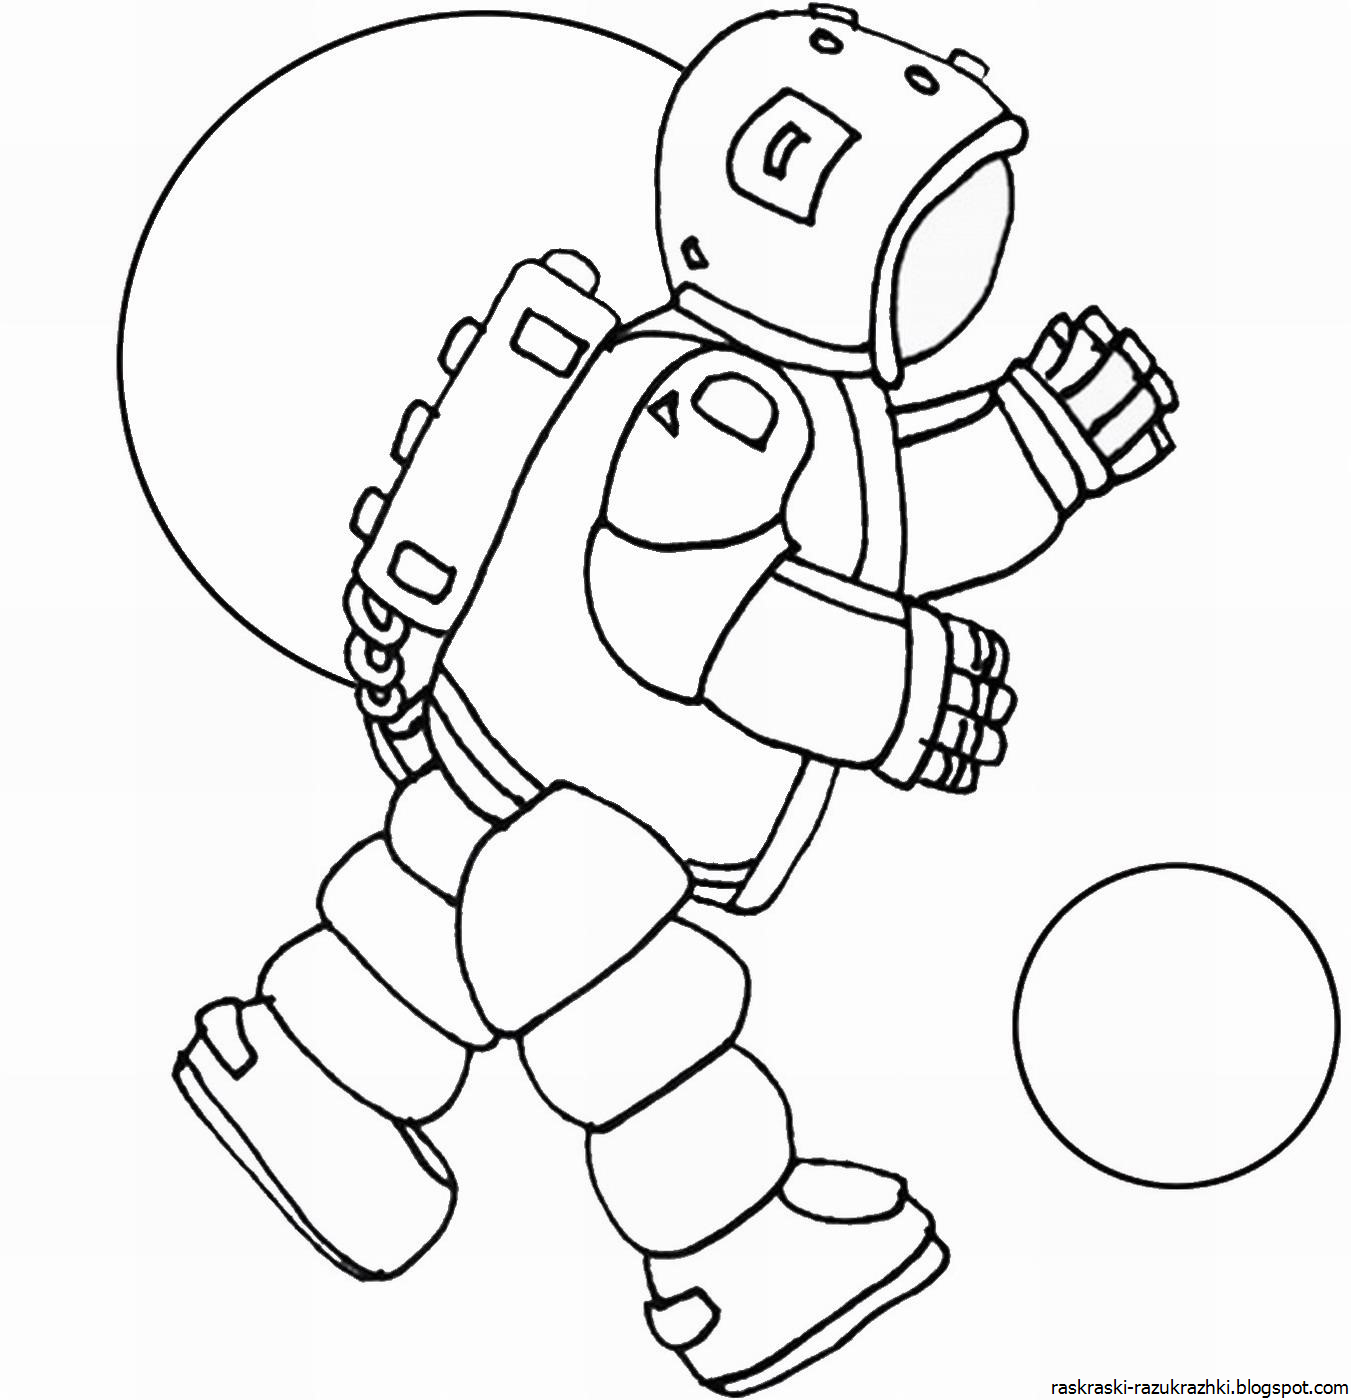 Космонавт шаблон для вырезания распечатать. Космонавт раскраска. Космонавт раскраска для детей. Космические раскраски для детей. Космос раскраска для детей.